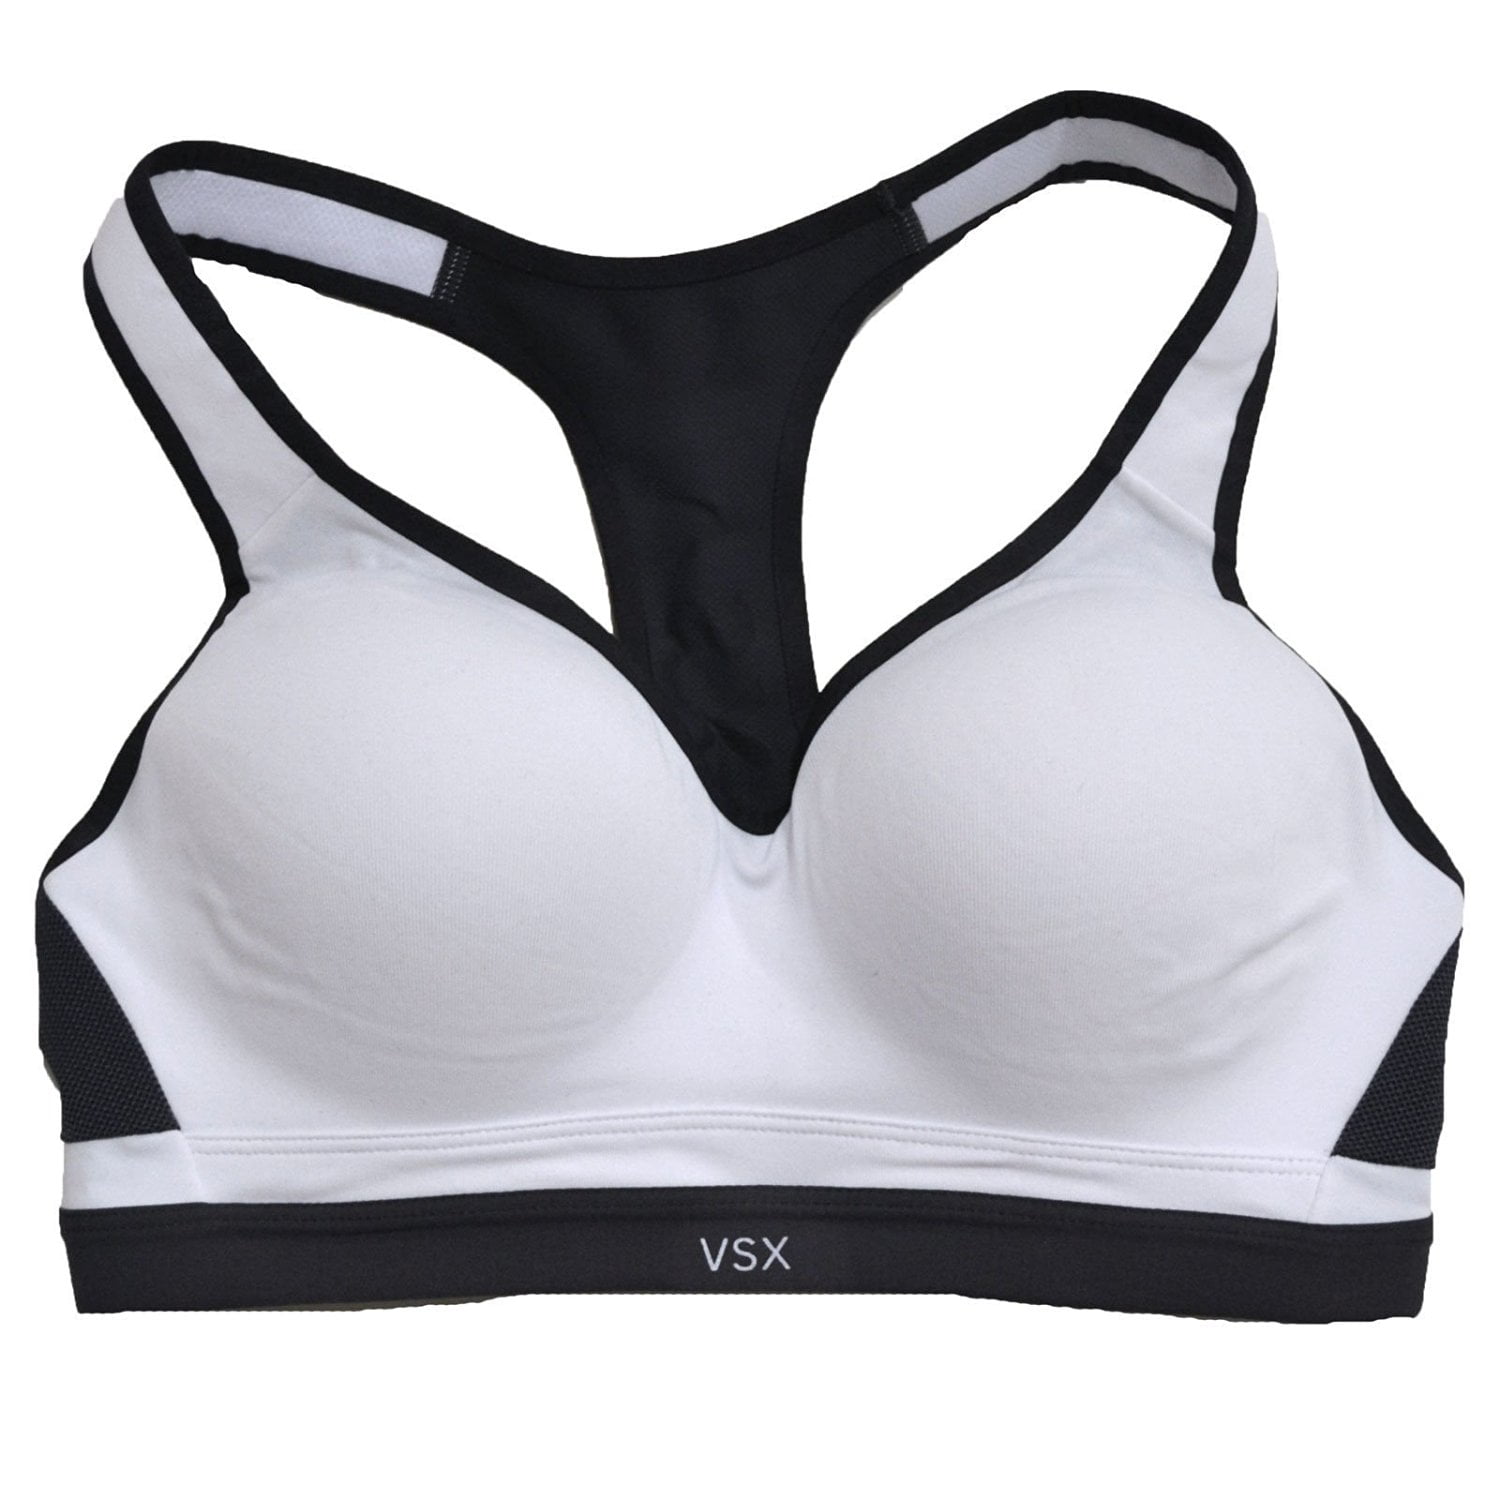 VSX Sport Victoria Secret Gray/Black/White Sports bra size S/P EUC 